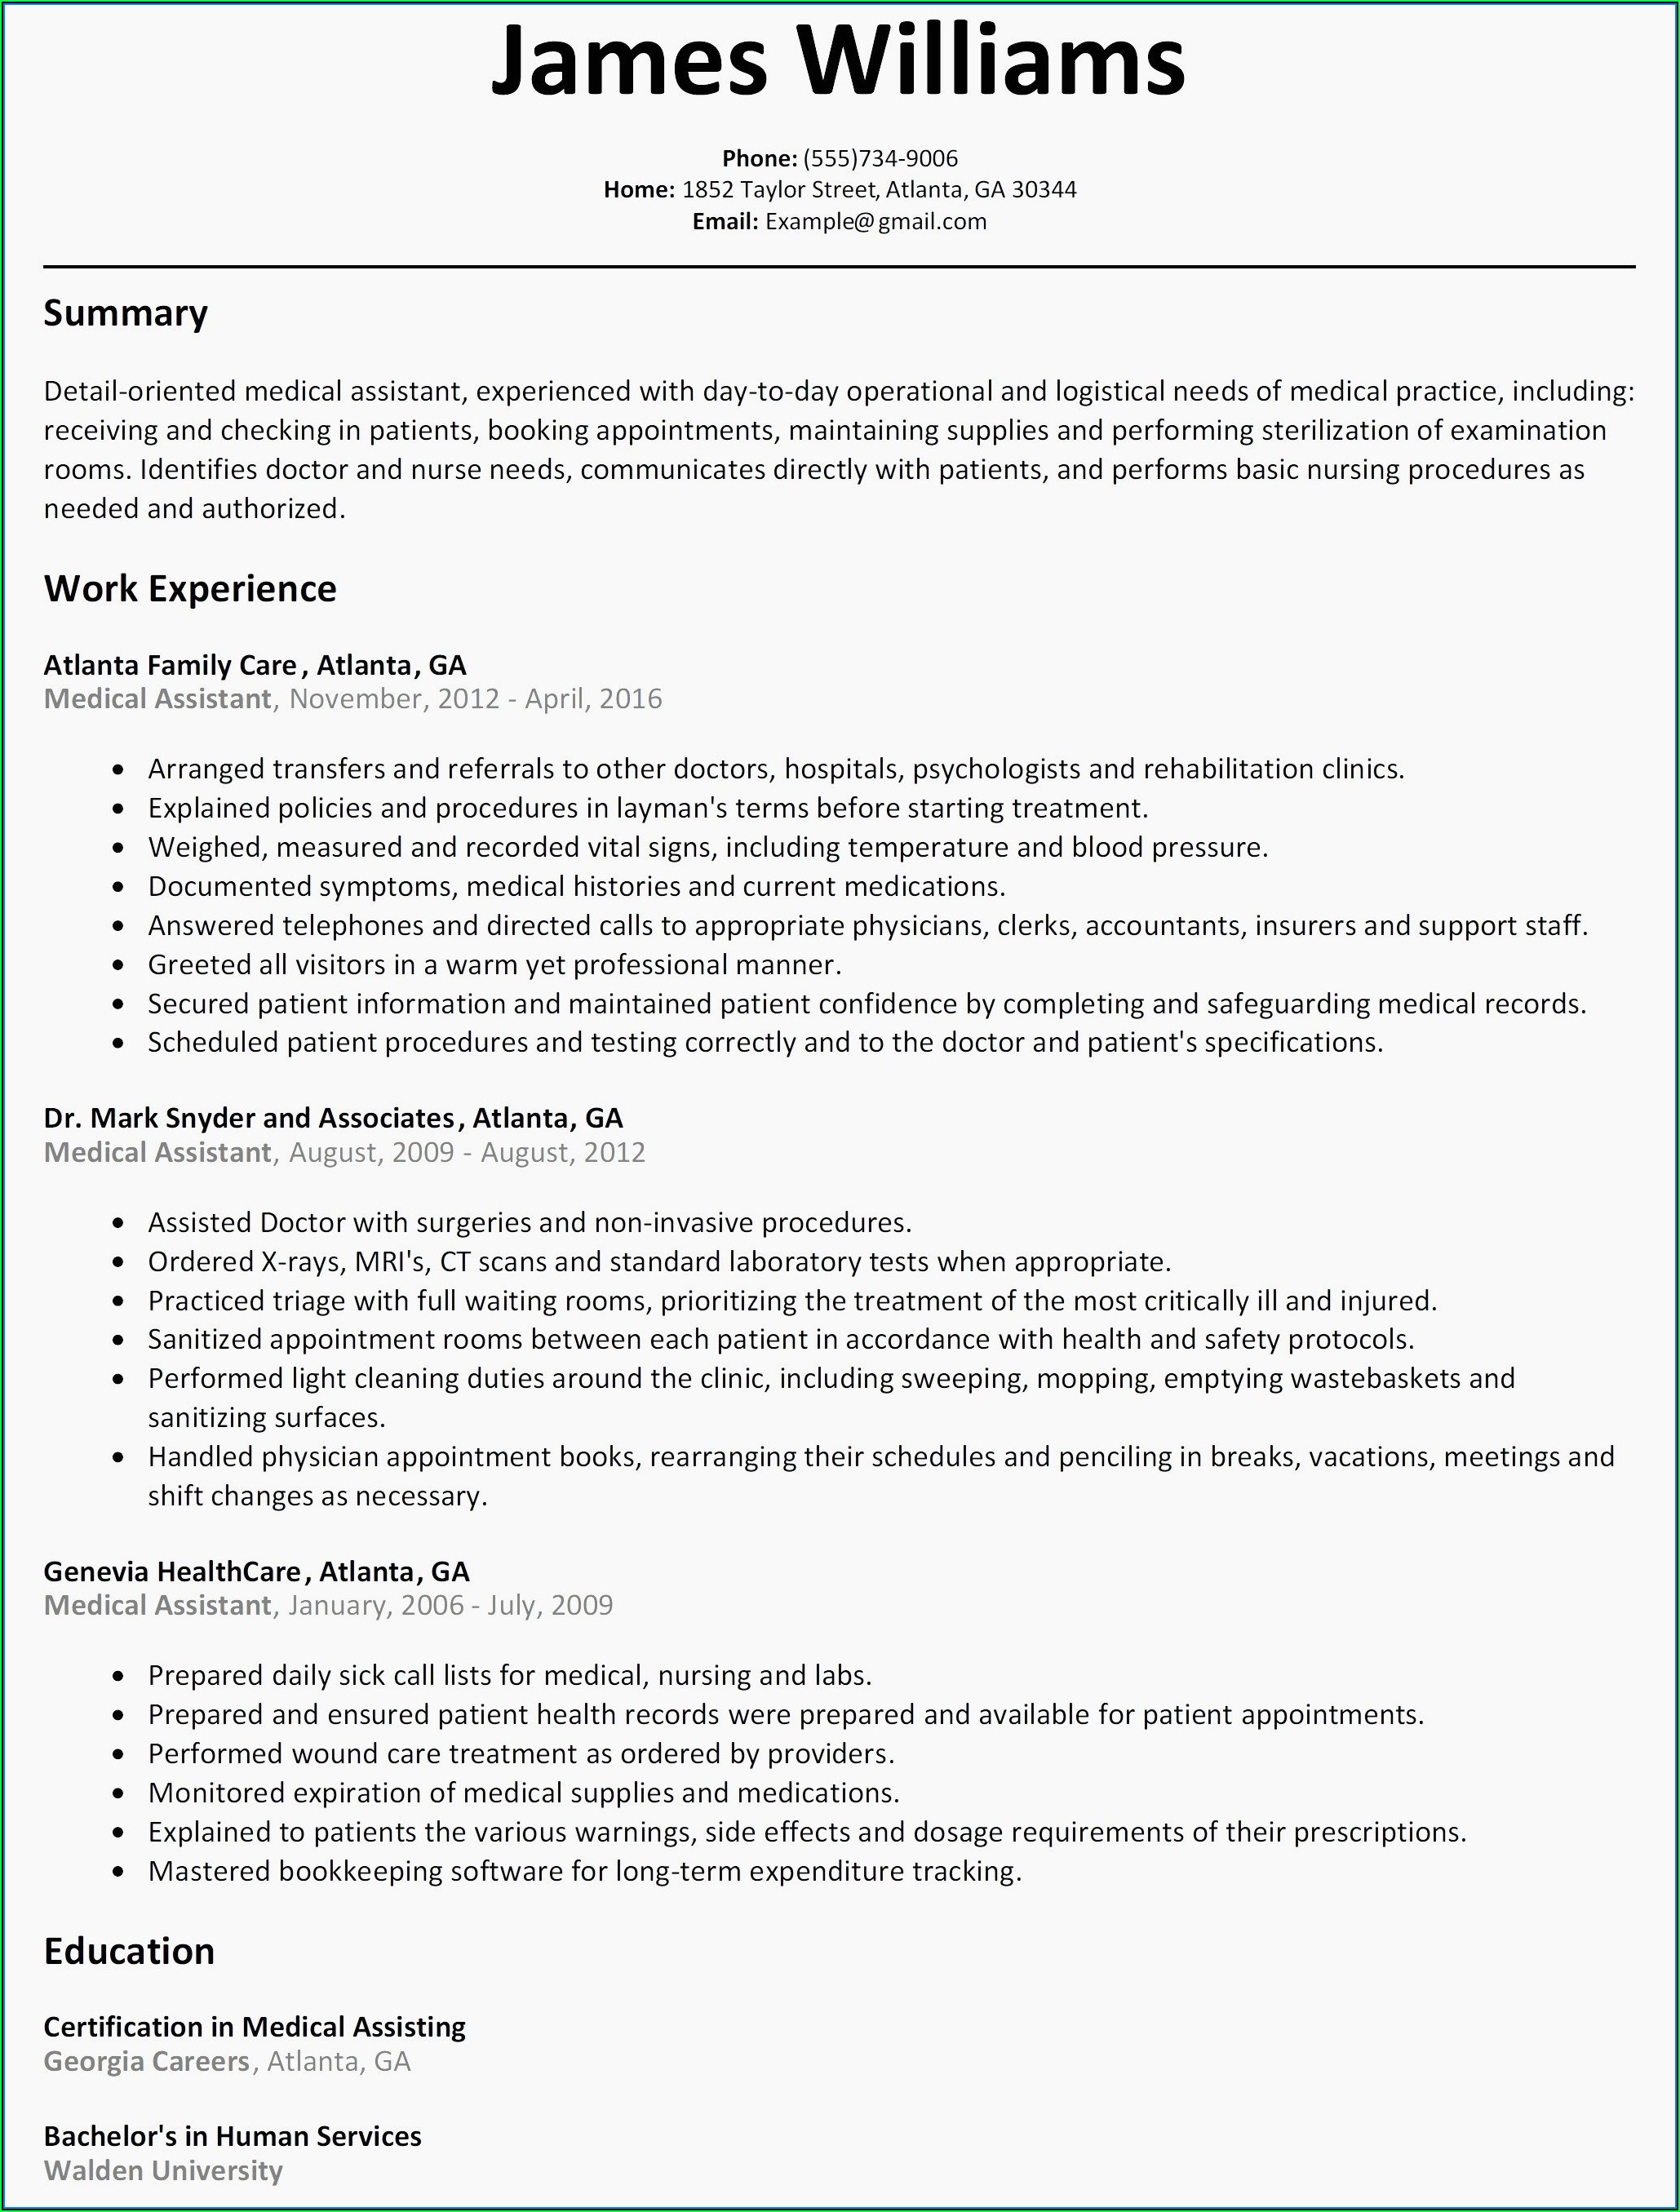 Free Resume Builder Yahoo